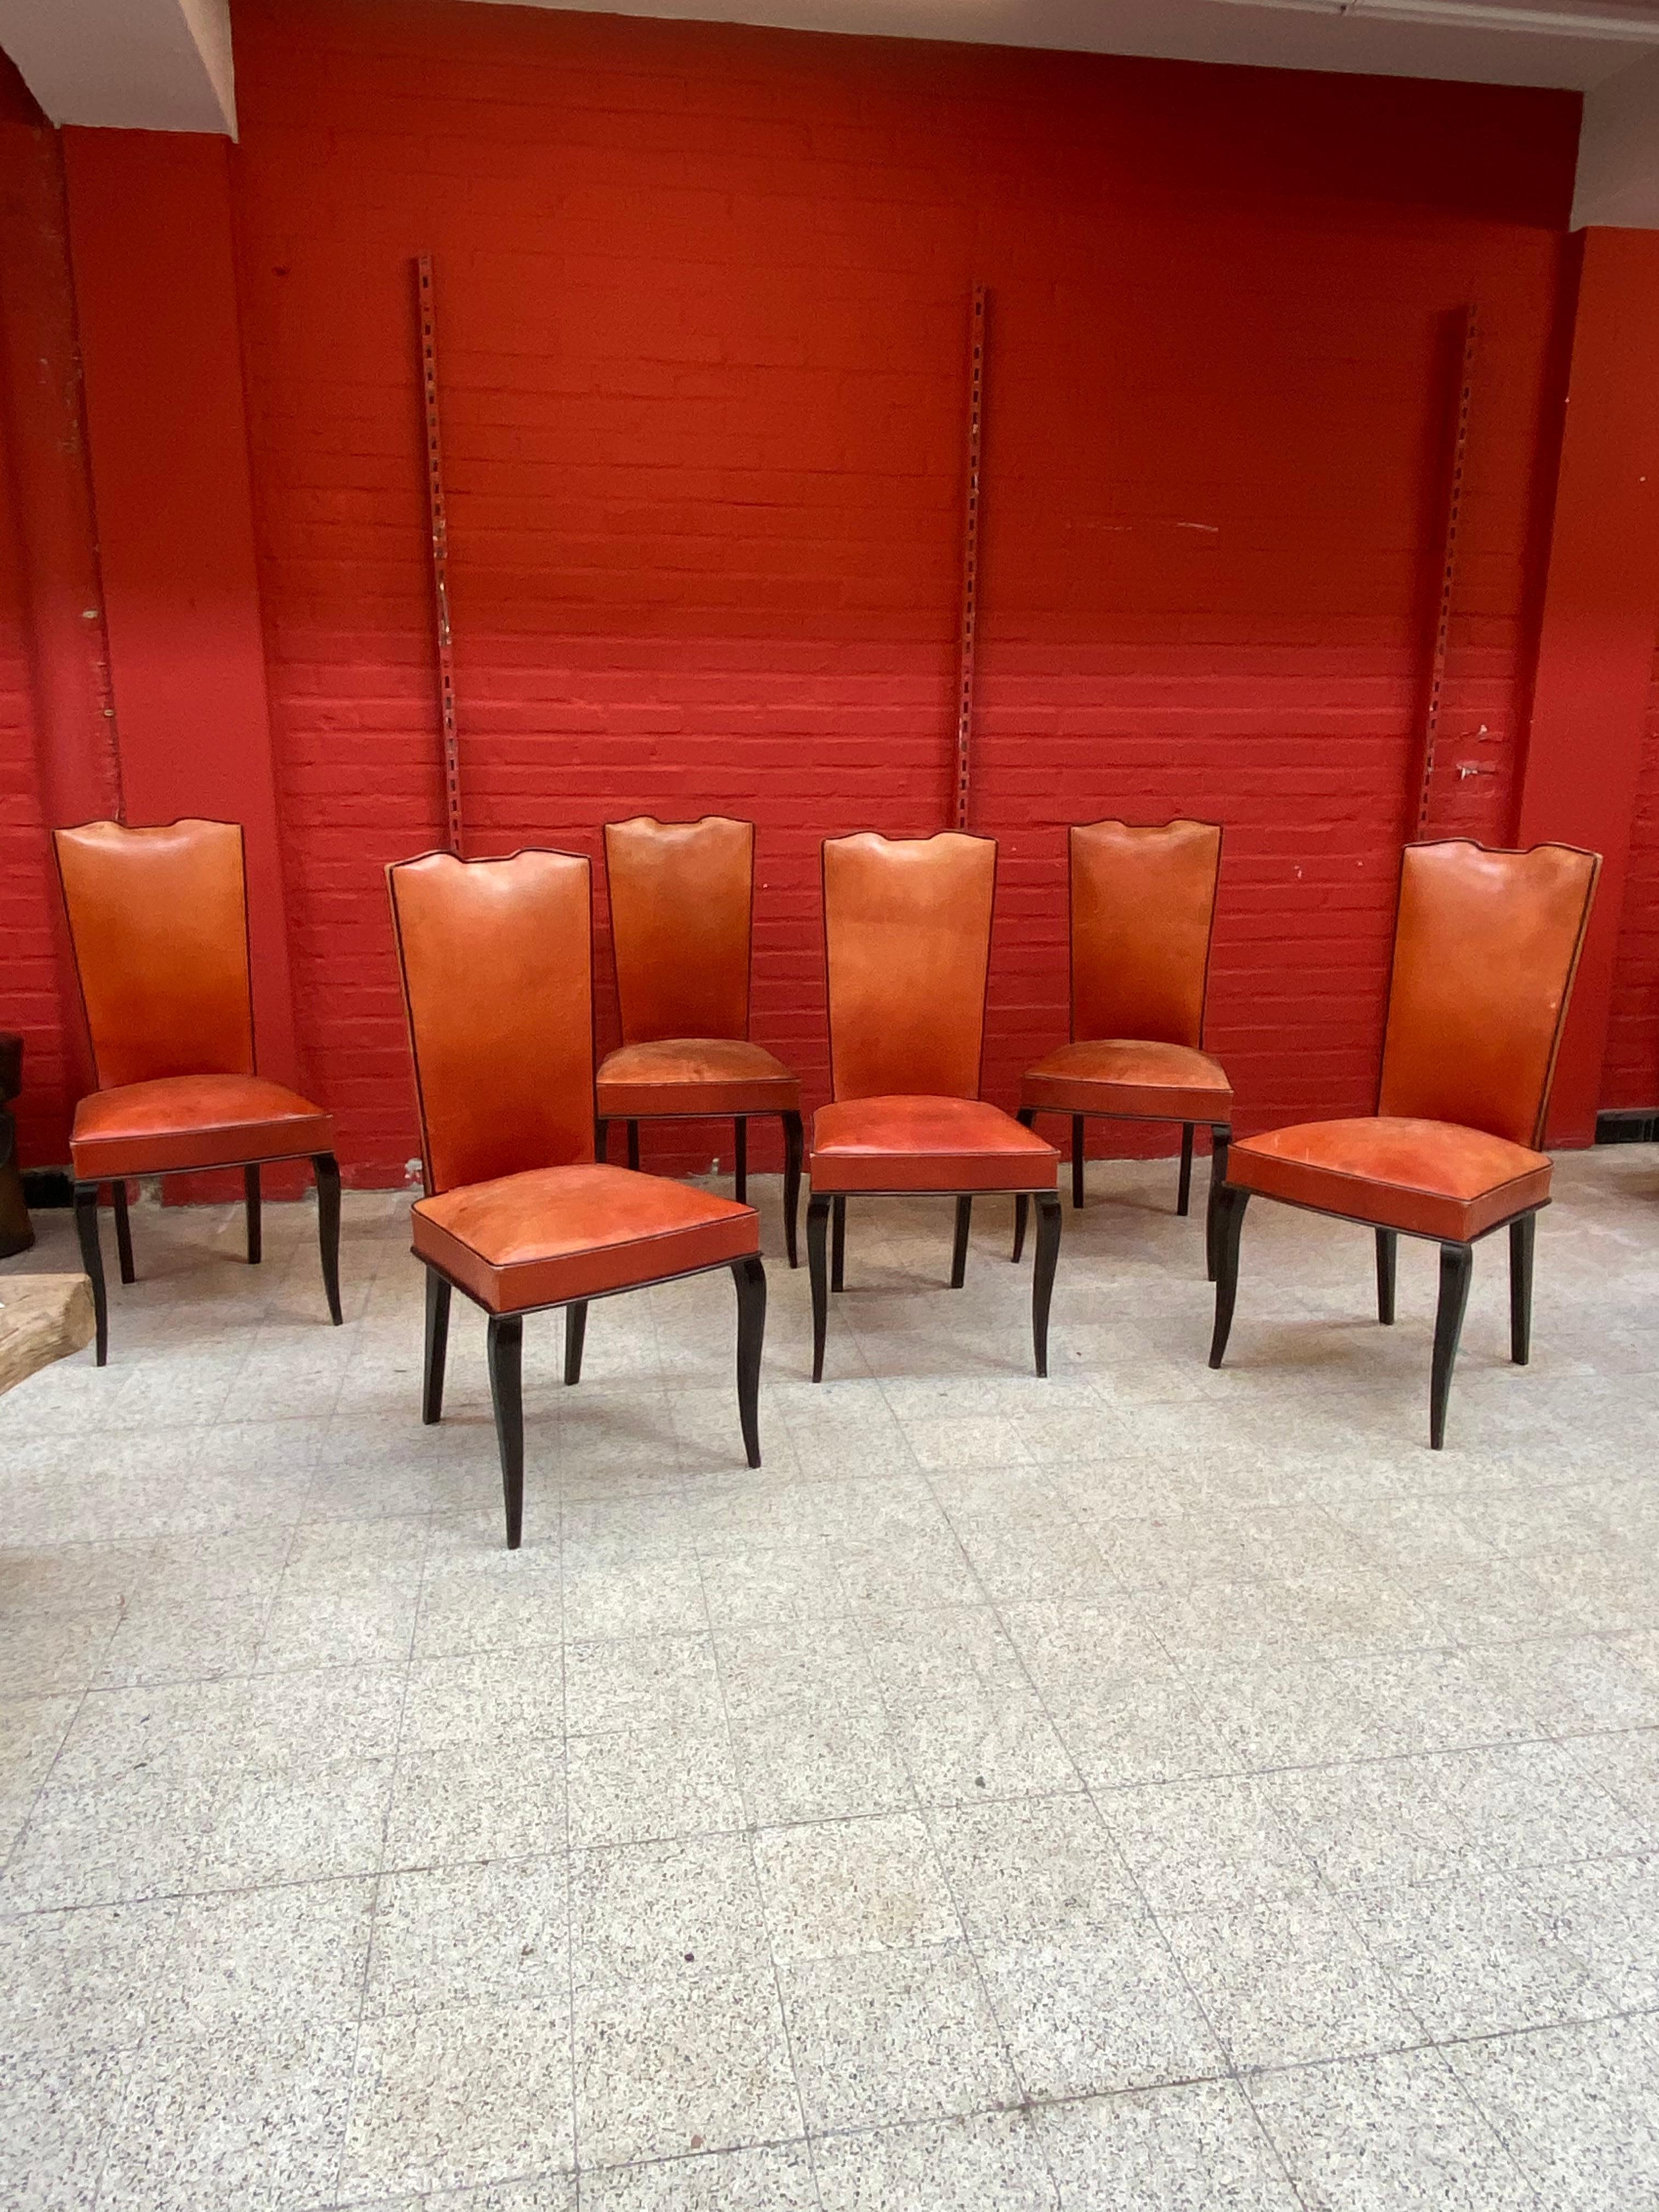 Satz von 6 eleganten französischen Art Deco Stühlen
geschwärztes Holz, rotes Leder, Rückseite der Rückenlehne in Nussbaumfurnier.
Das Leder ist nicht gerissen, nicht perforiert, aber es gibt Unterschiede in der Patina und einige Flecken.
Der Sitz